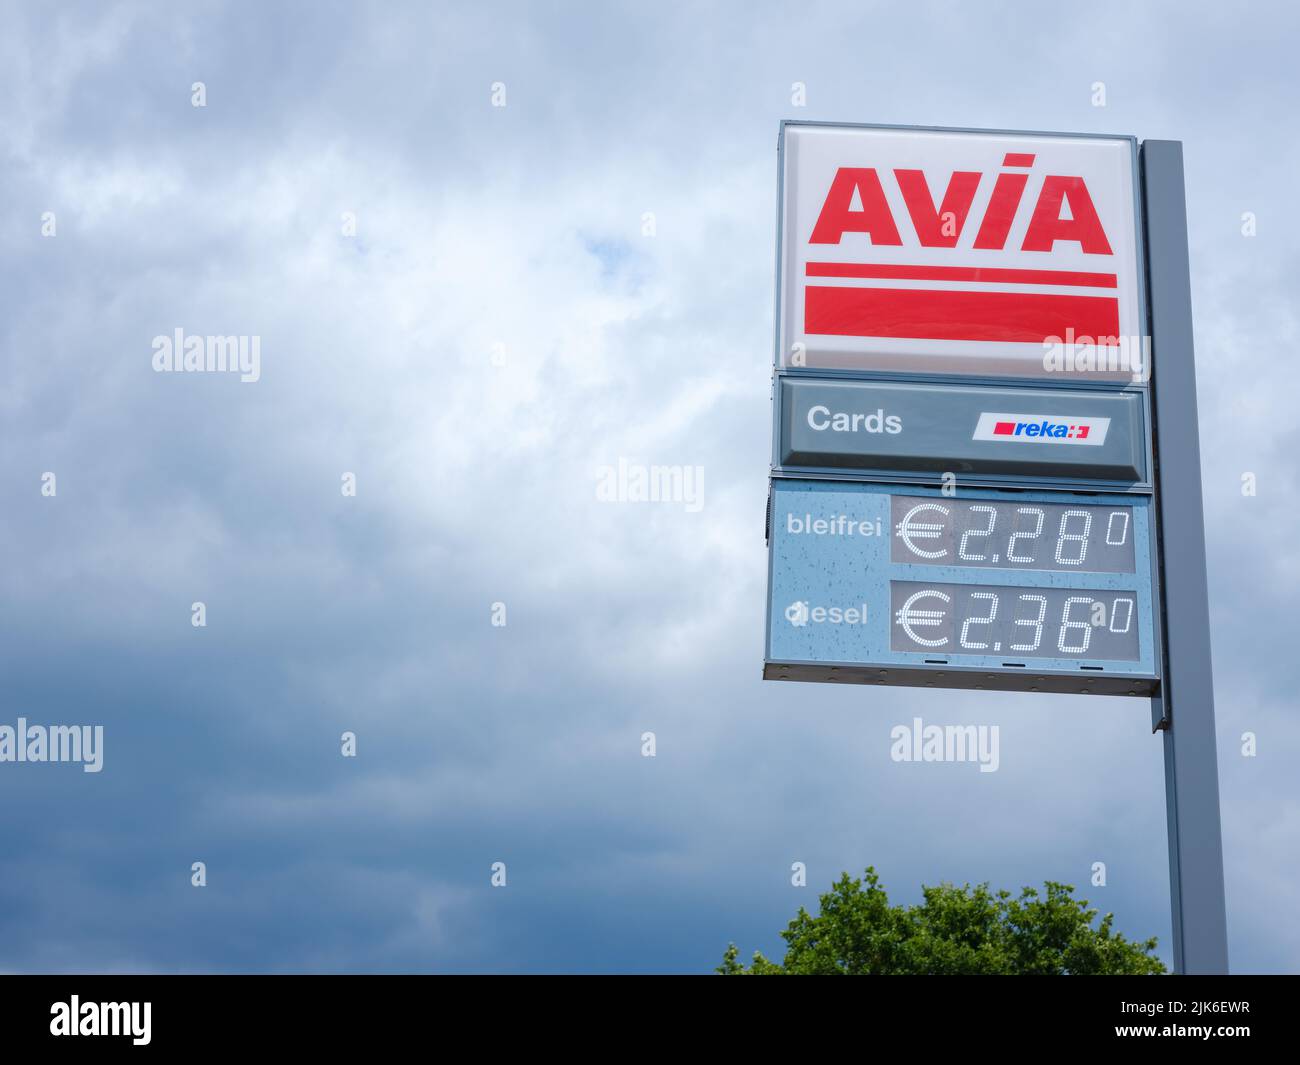 Bâle, Suisse - 4 juillet 2022: Panneau Avia à la station-service contre ciel nuageux. Avec environ 3 000 stations de remplissage, Avia est la marque d'huile minérale indépendante du groupe la plus utilisée en Europe. Banque D'Images